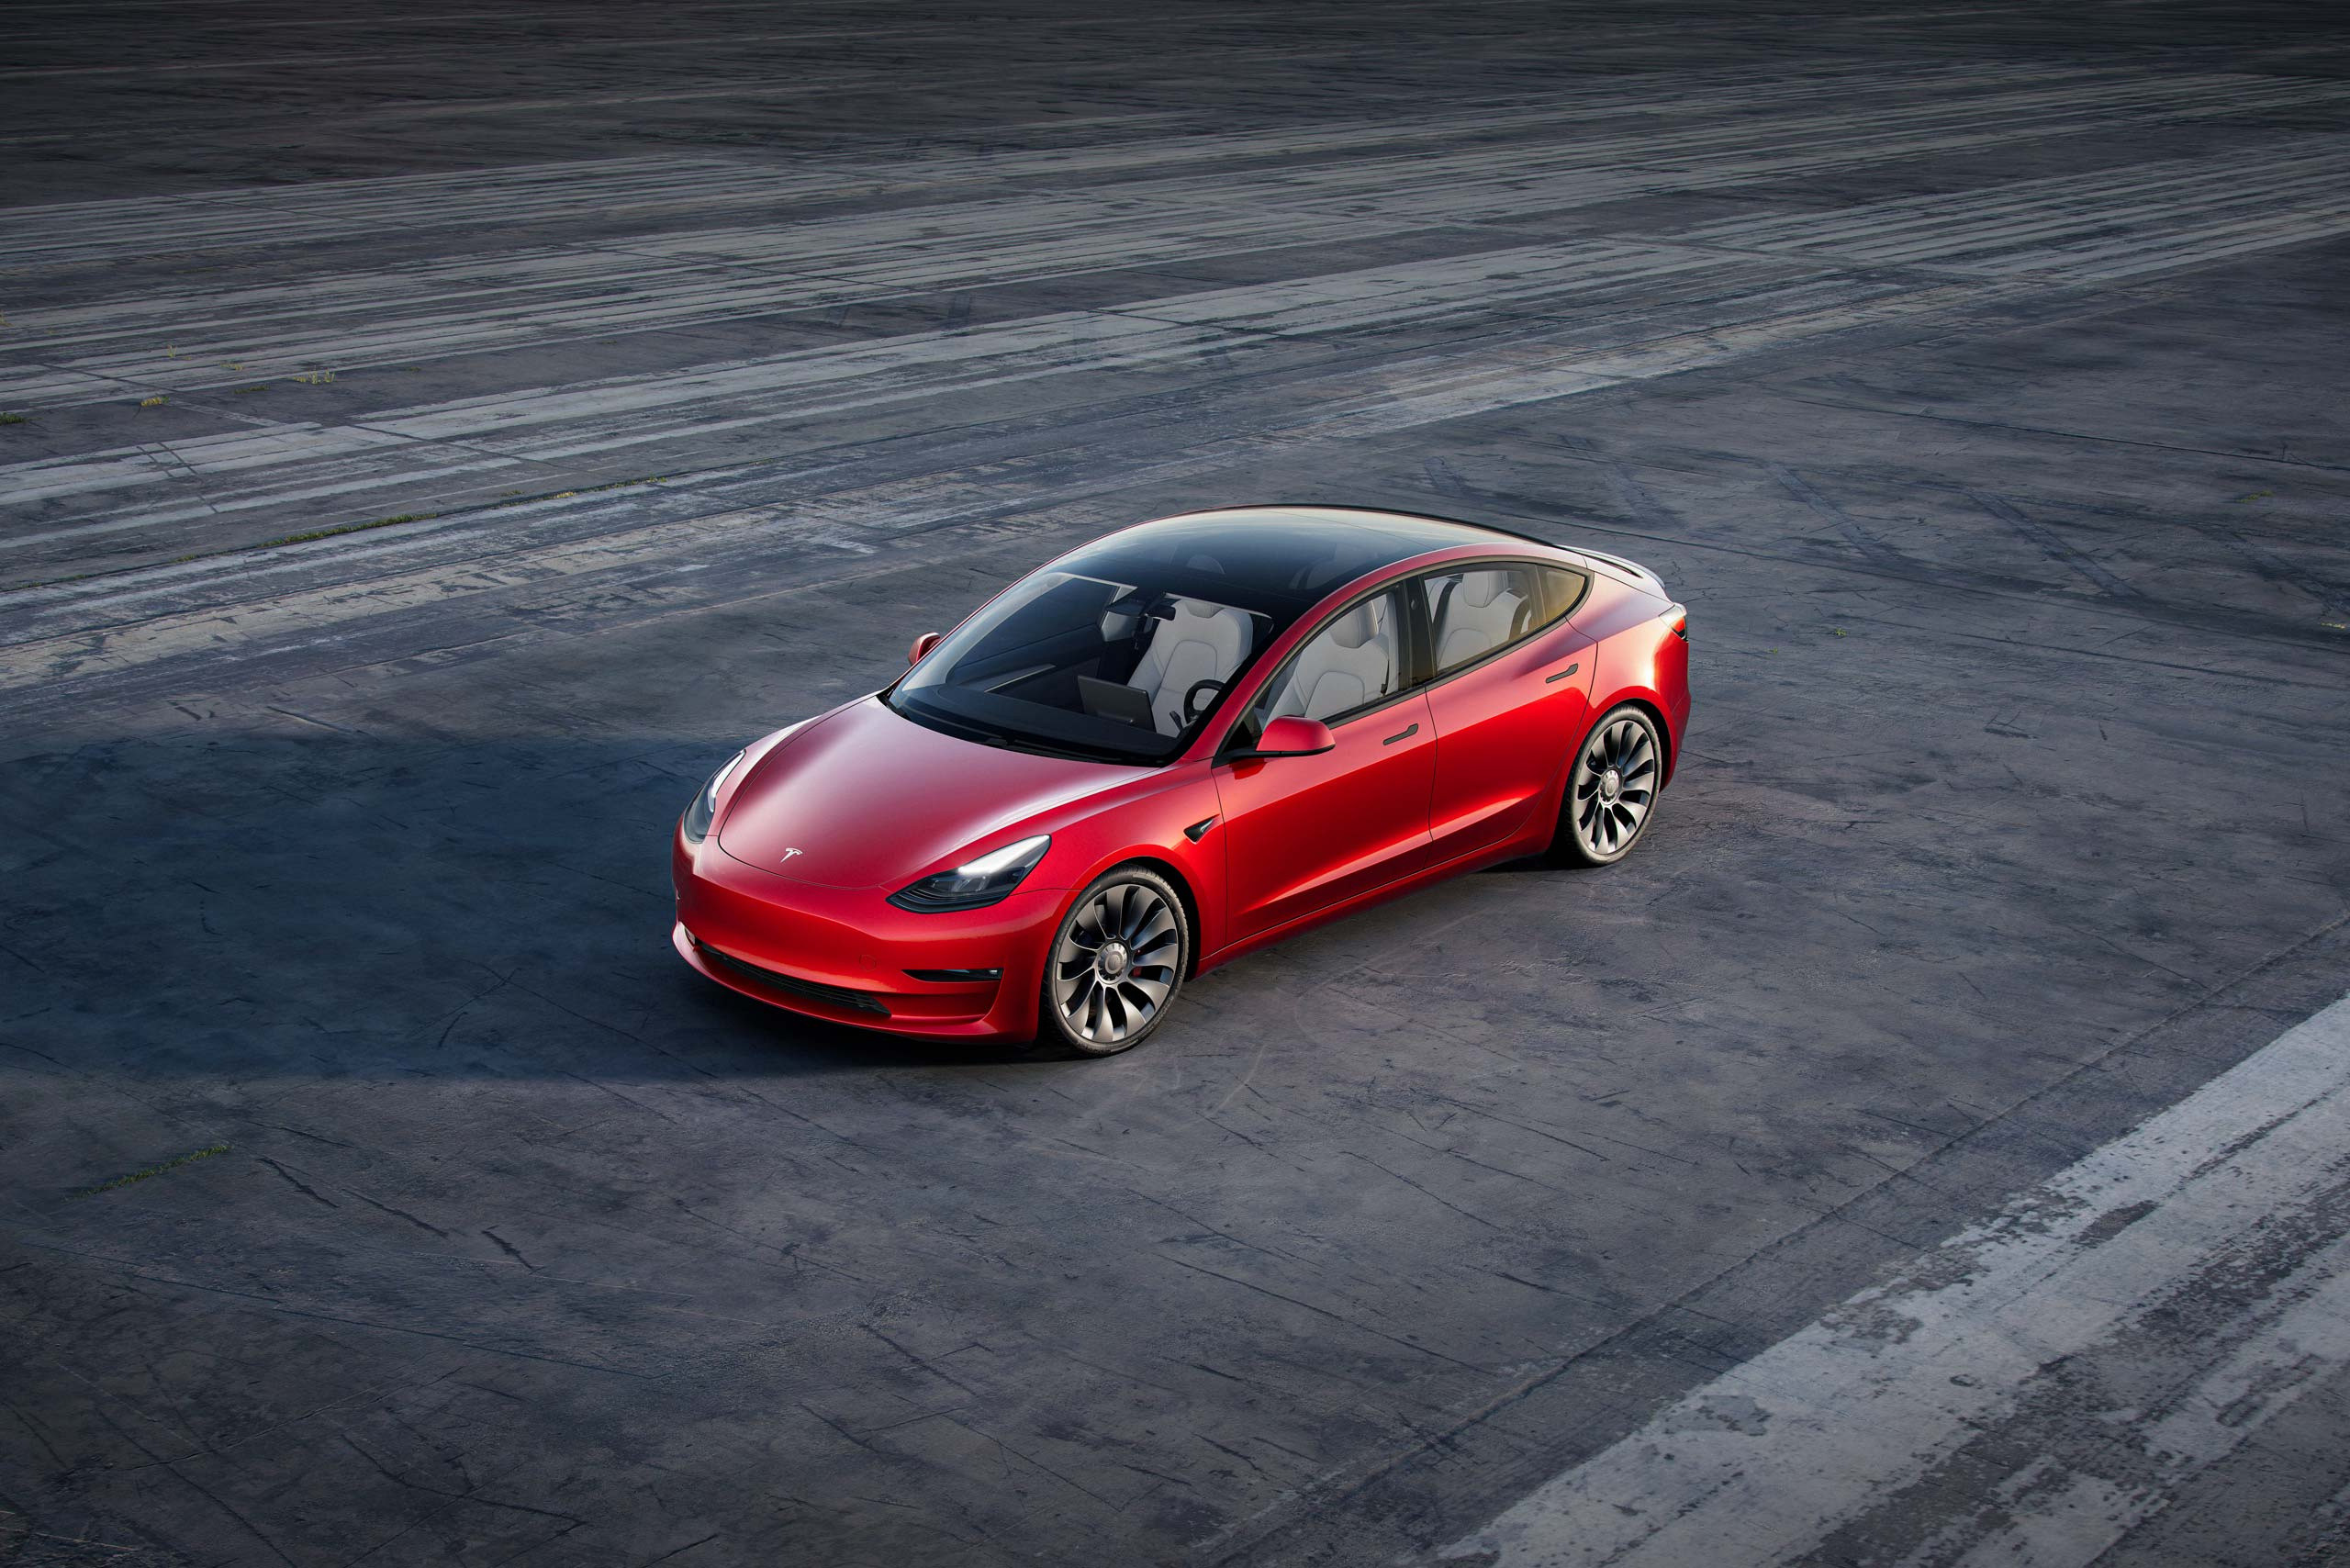 Encore une hausse de prix pour la Tesla Model 3, quand cela va-t-il s'arrêter ?